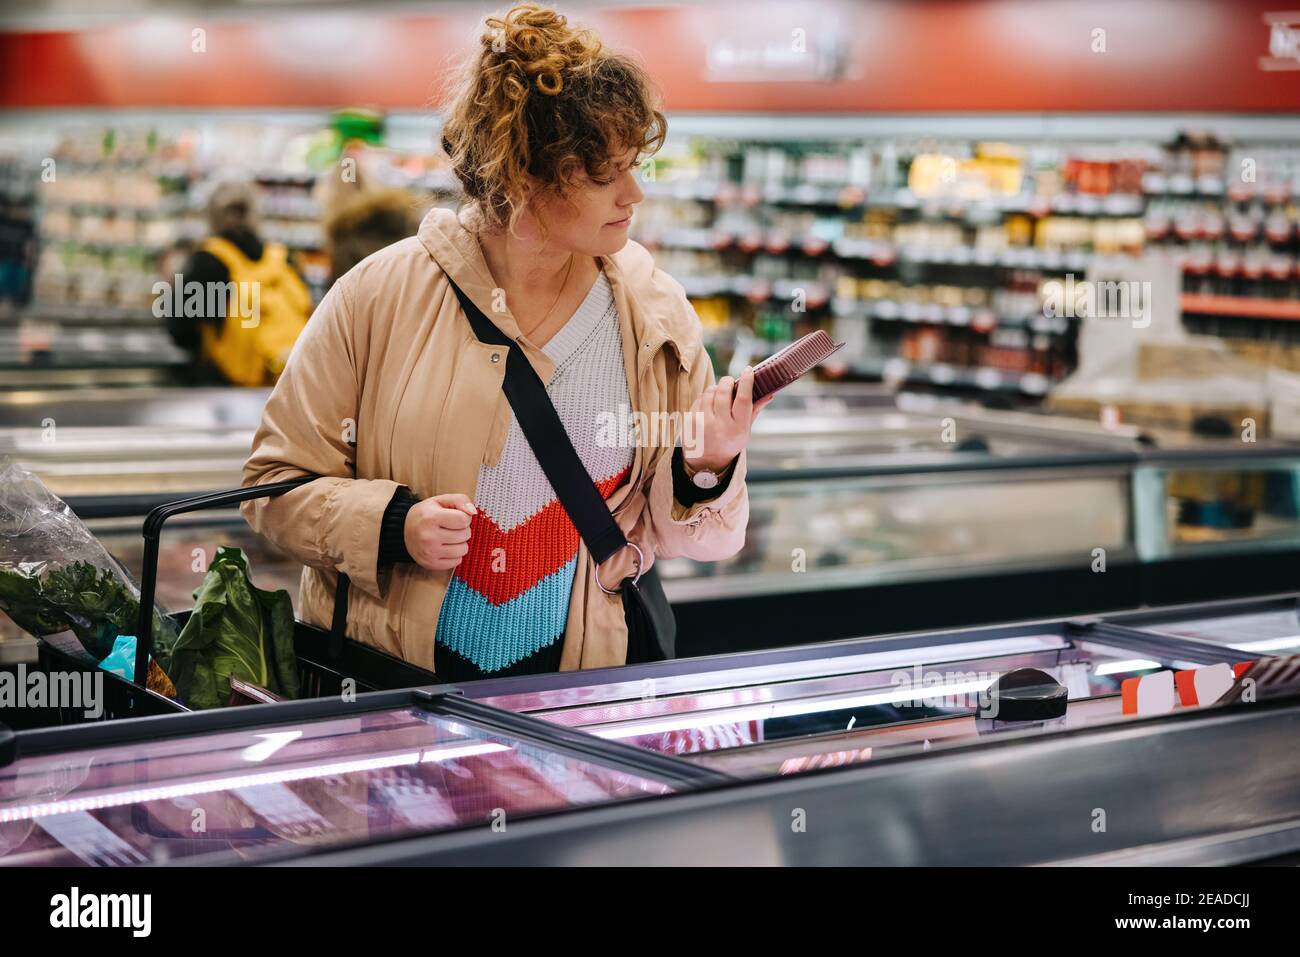 Frau im Lebensmittelgeschäft beim Lesen von Lebensmitteletiketten. Weibliche Kundin beim Lesen der Produktinformationen im Supermarkt. Stockfoto